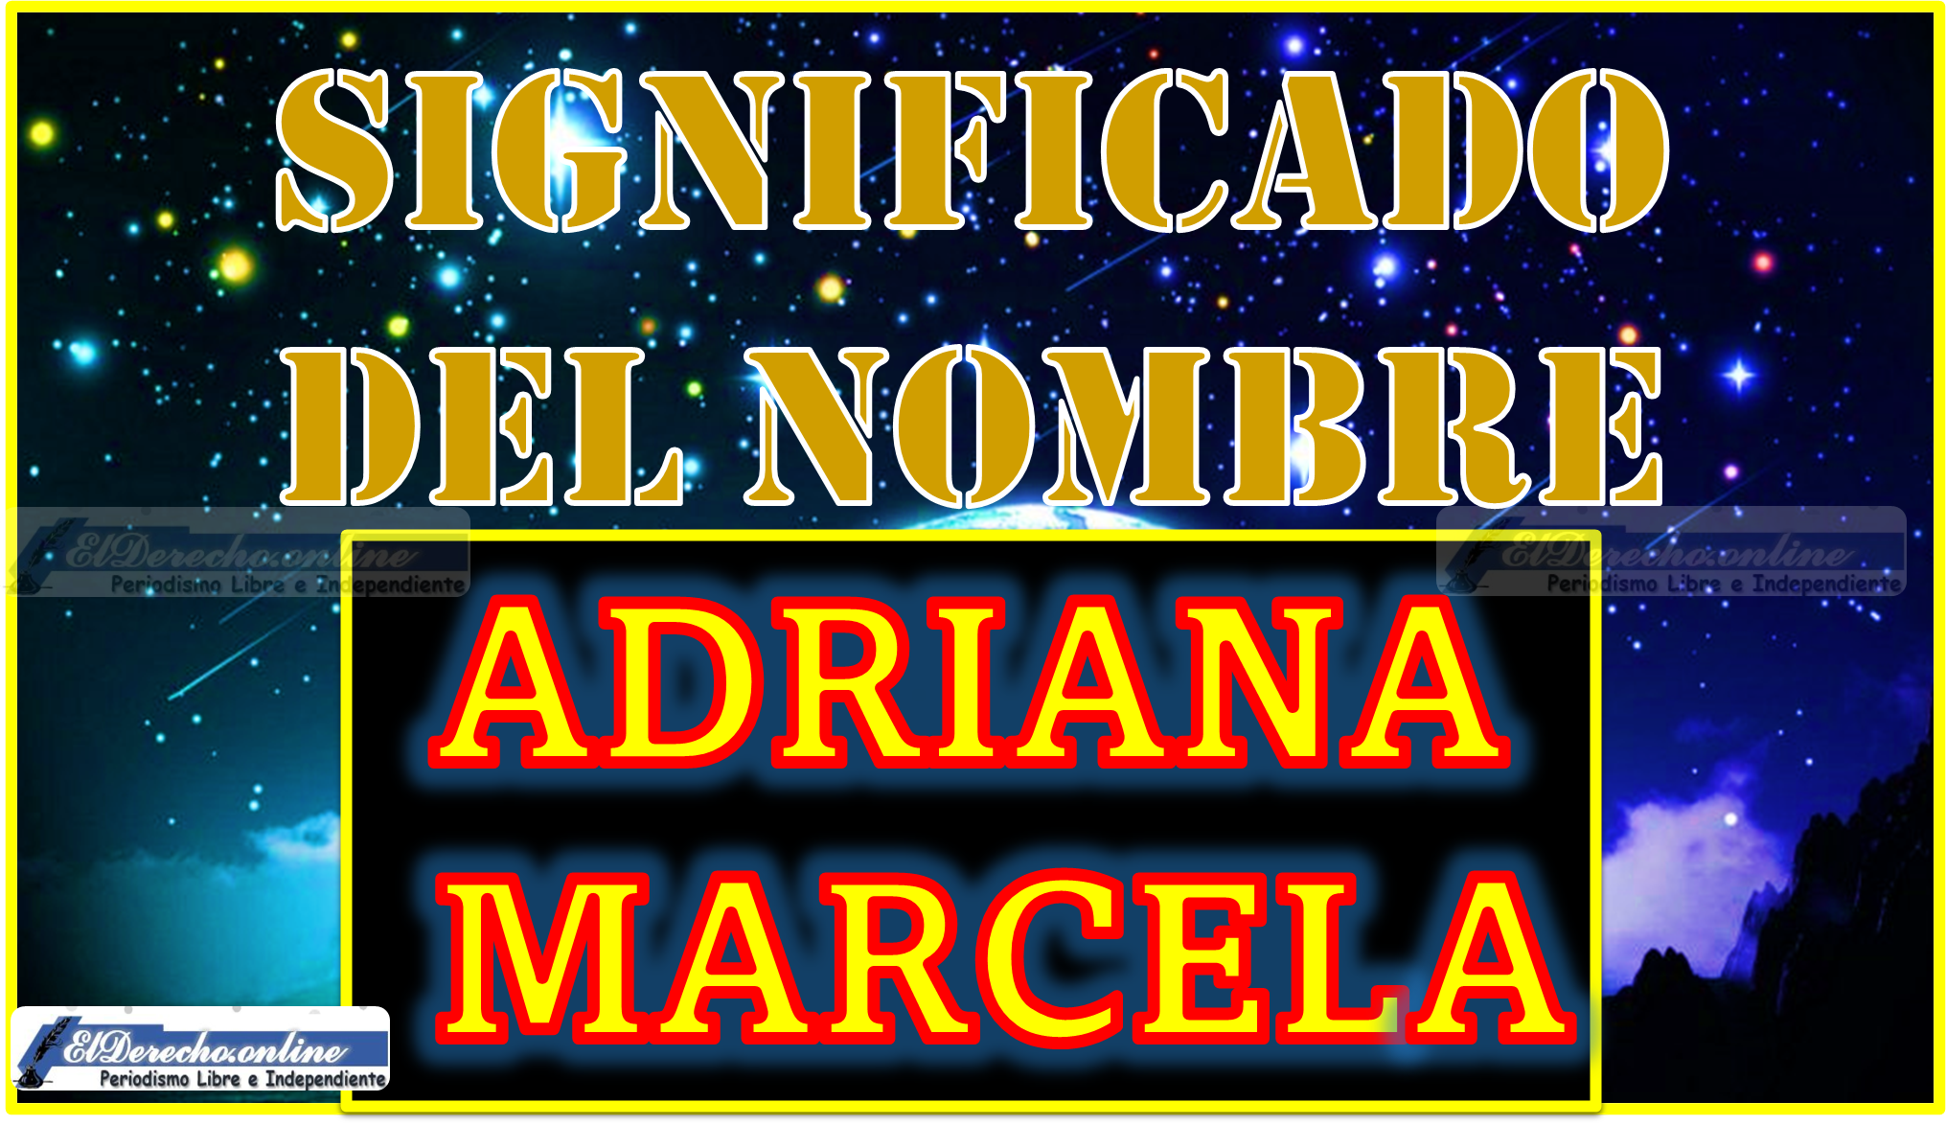 Significado del nombre Adriana Marcela, su origen y más